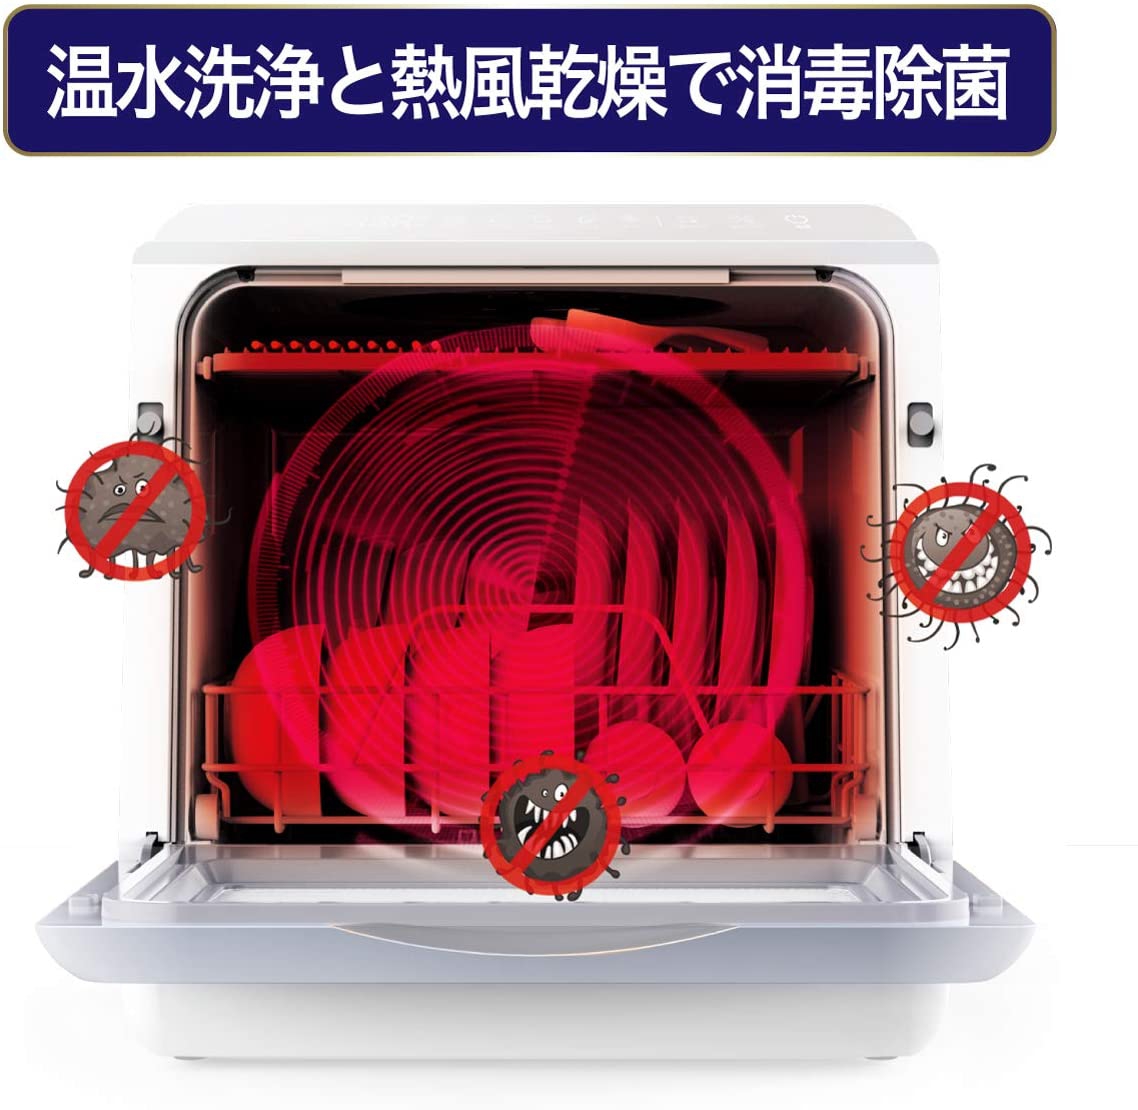 SOUYI(ソウイ) 食器洗い乾燥機 SY-118の商品画像サムネ7 